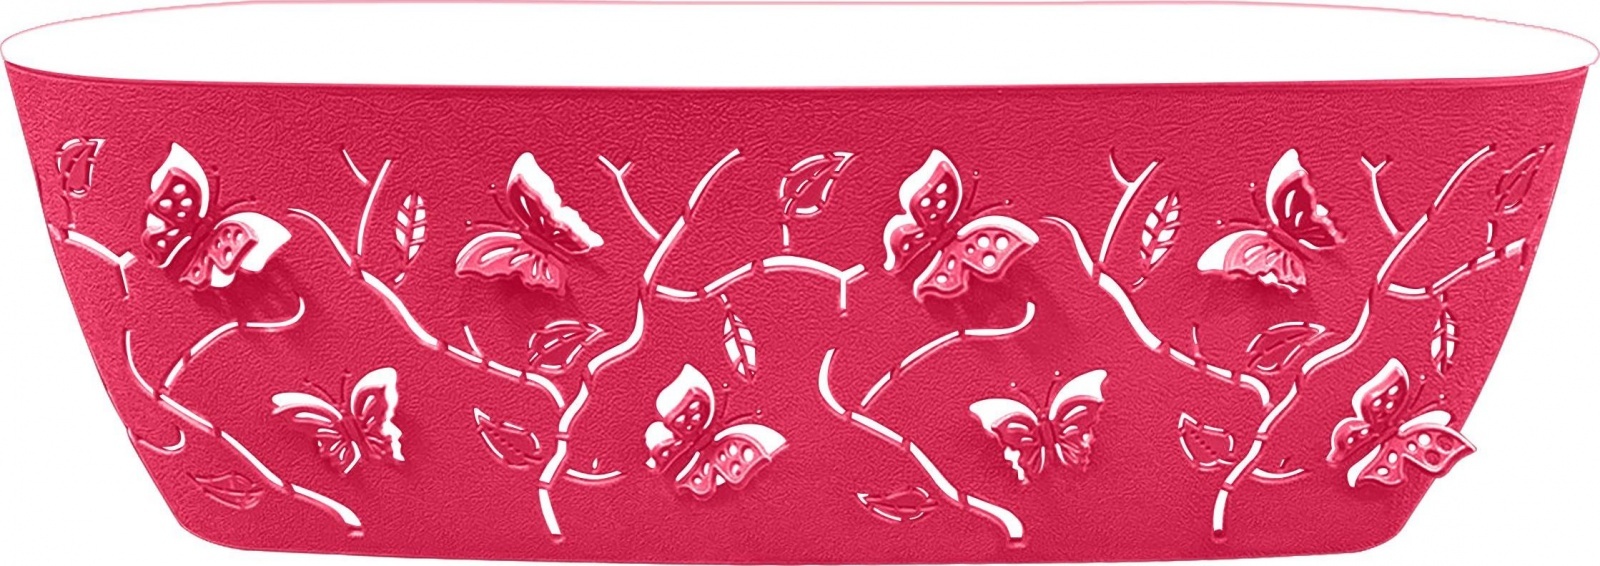 Горшок для цветов Butterflies 7,3 л 470х150 мм овальный ягодно-розовый (Репаблик РФ)